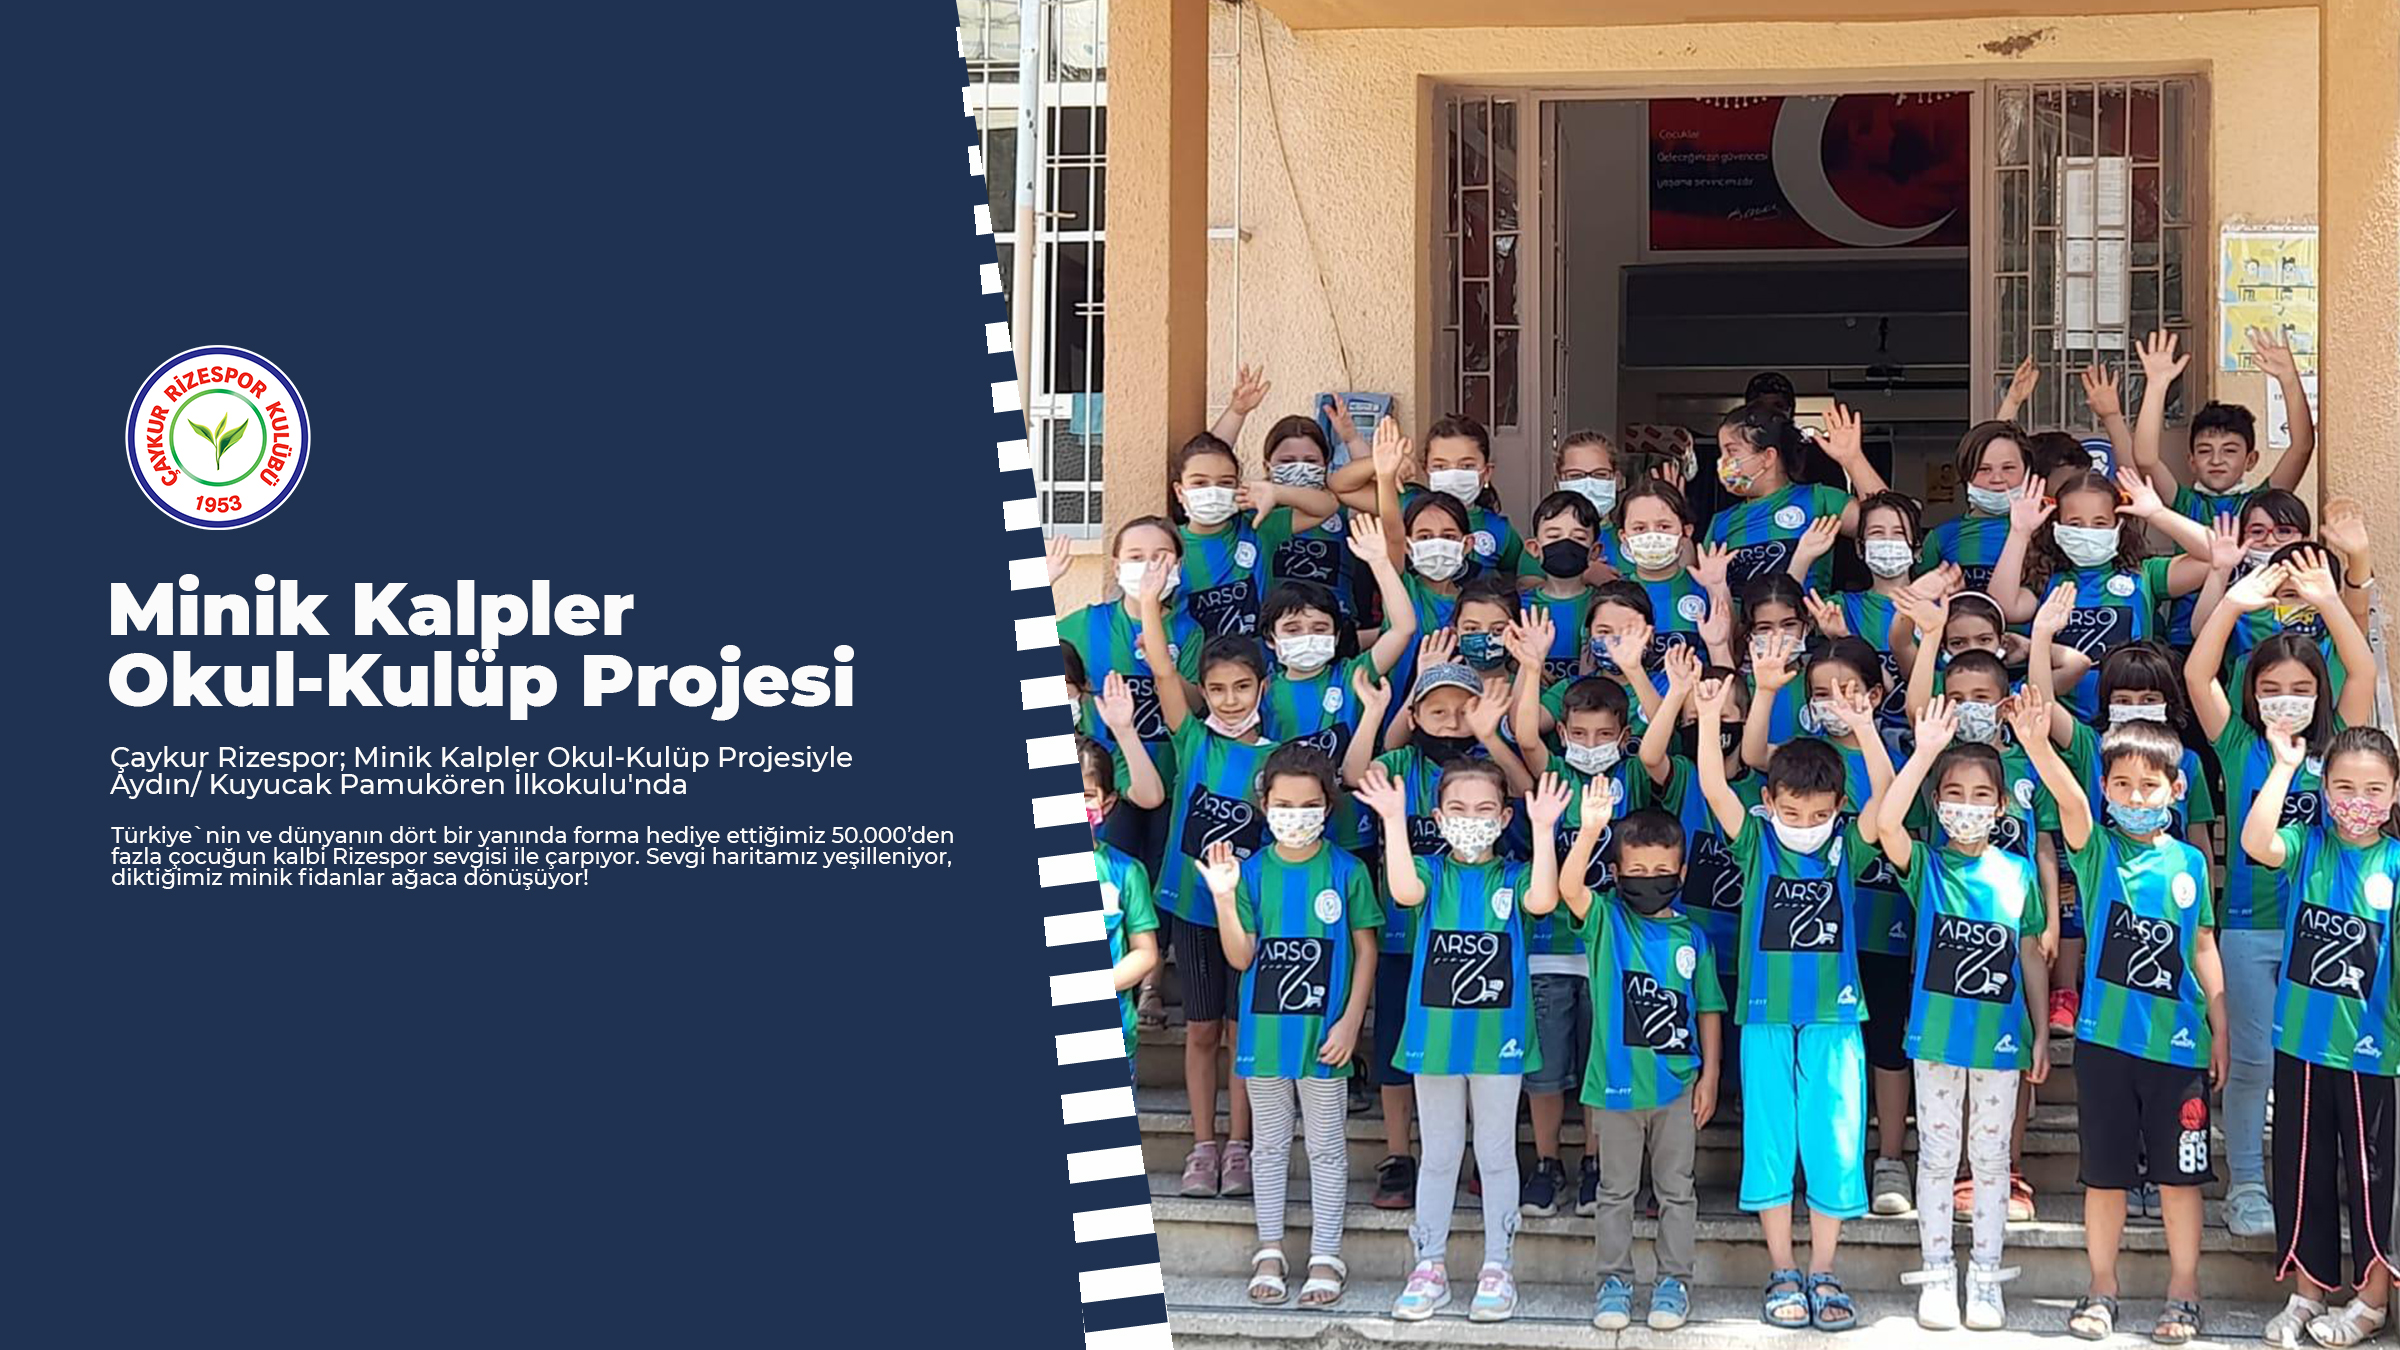 Çaykur Rizespor; Minik Kalpler Okul-Kulüp Projesiyle Aydın/ Kuyucak Pamukören İlkokulu'nda